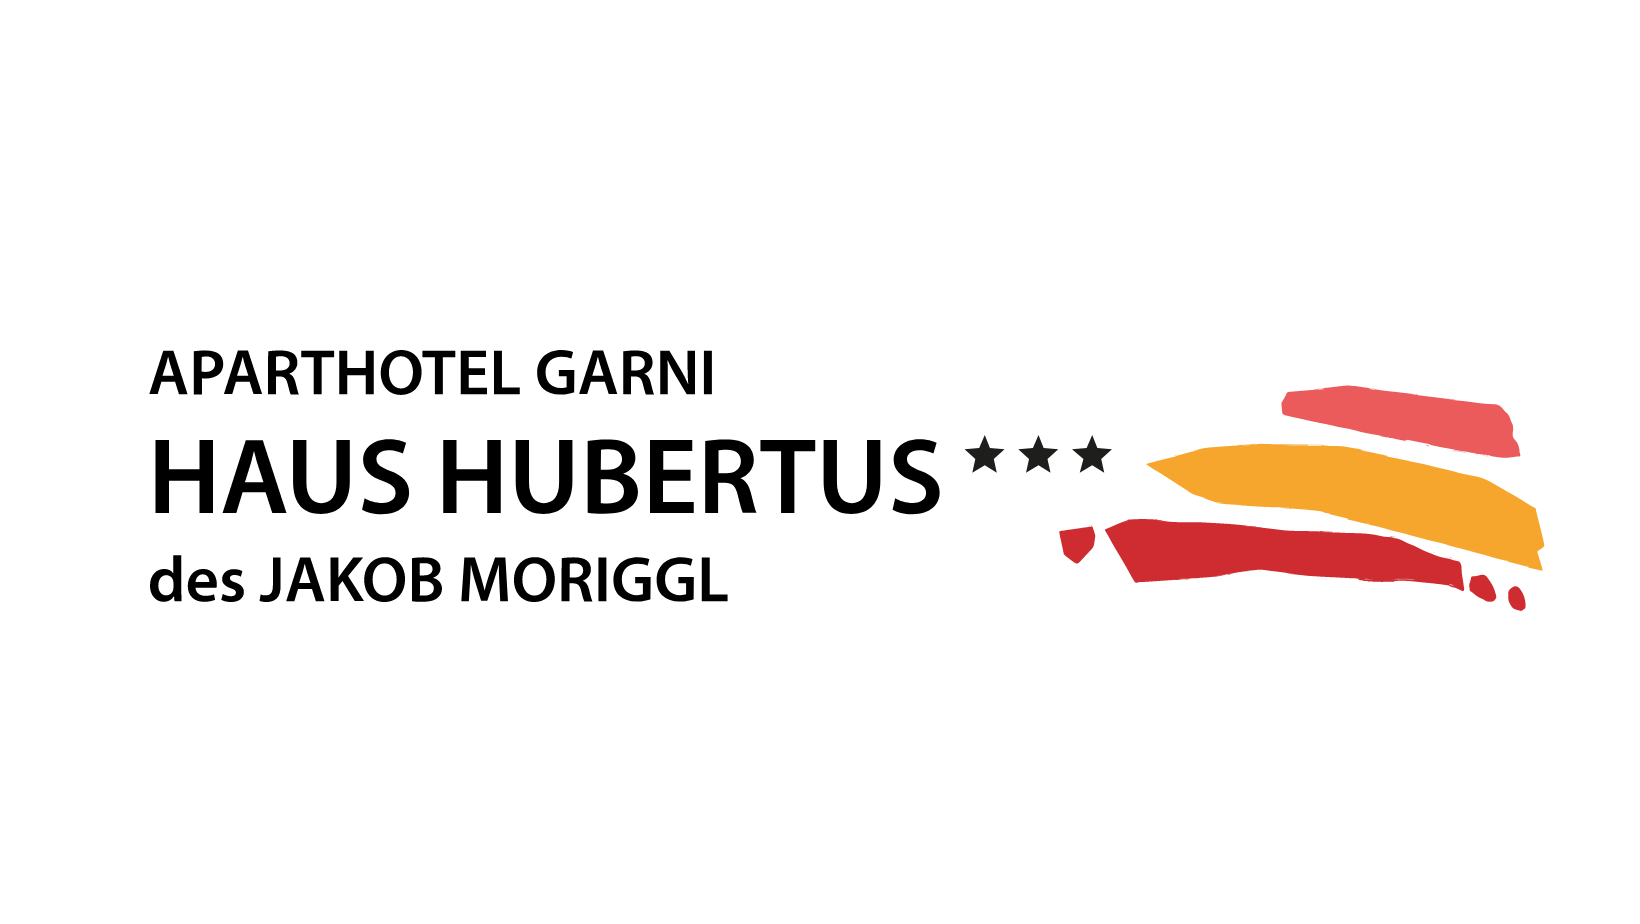 Aparthotel Garni Haus Hubertus des Jakob Moriggl